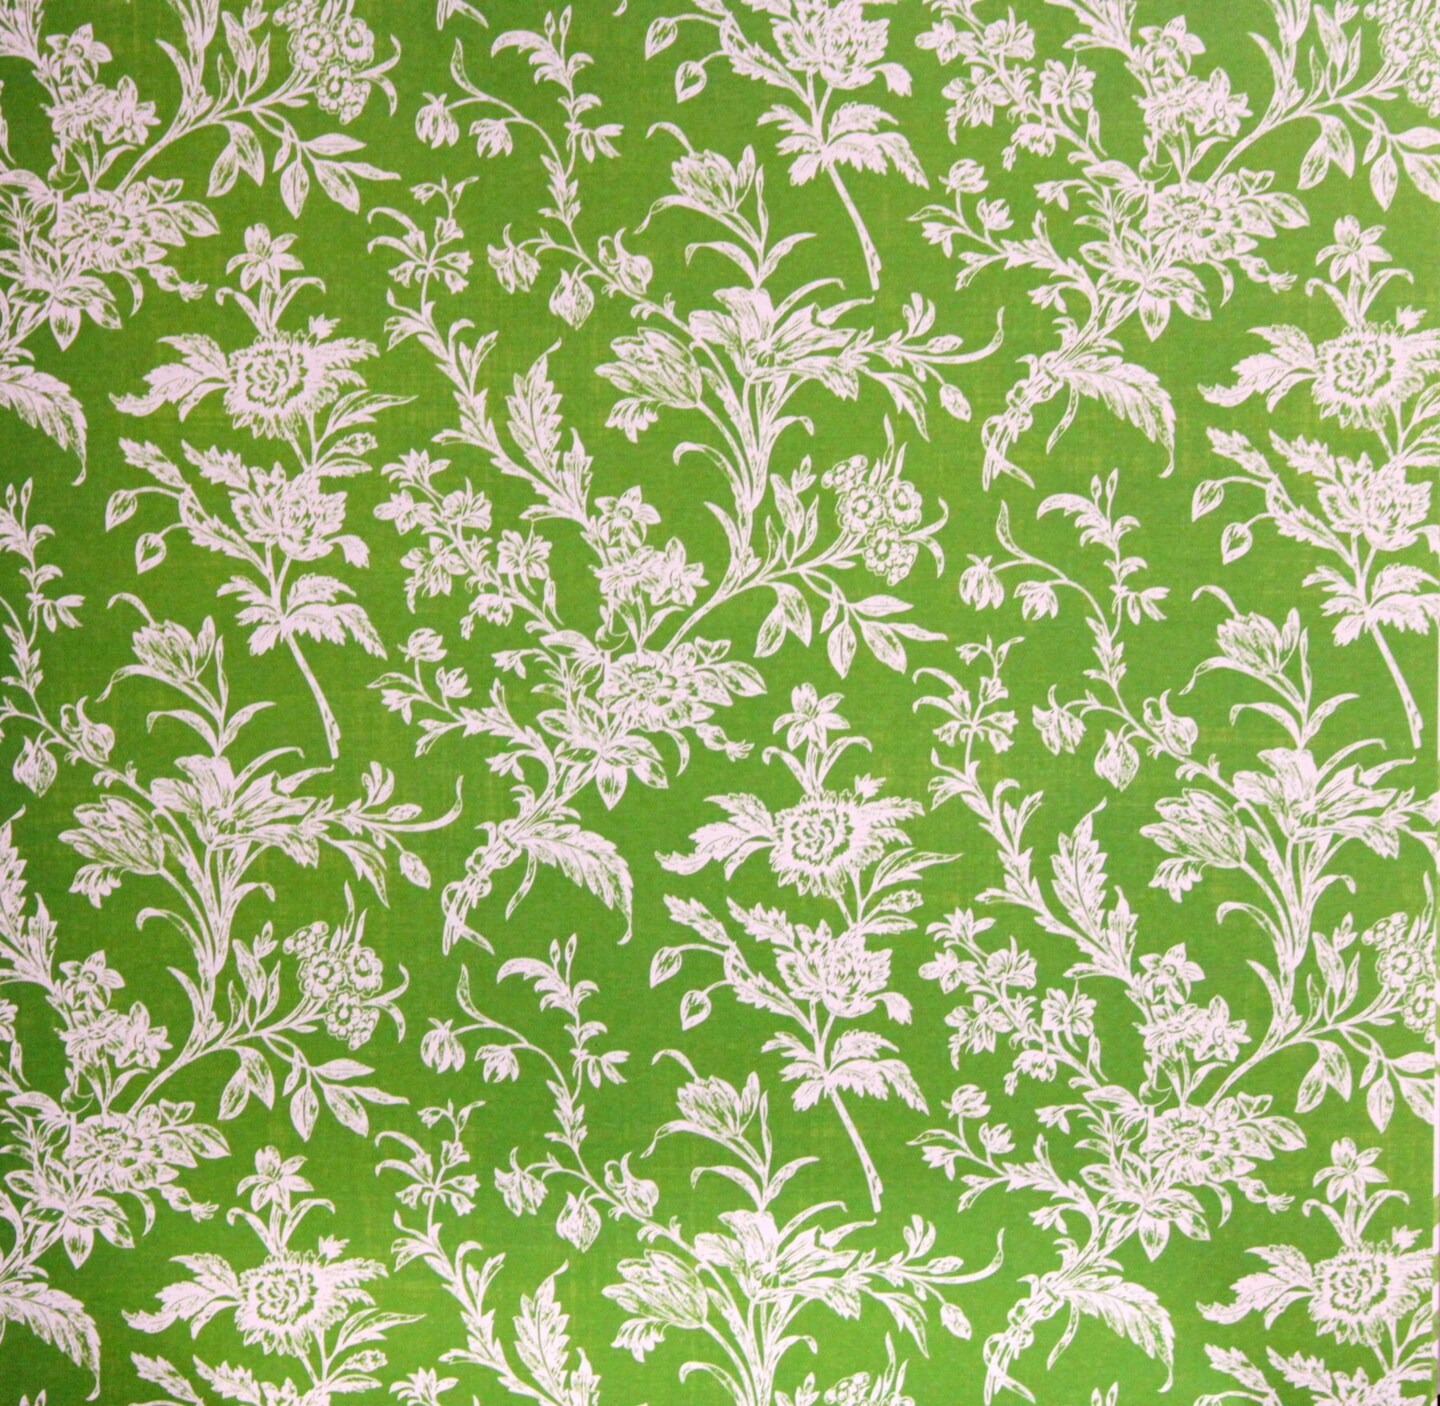 Preppy Petals Green Wildflowers 12 x 12 Lt. Textured Cardstock Paper